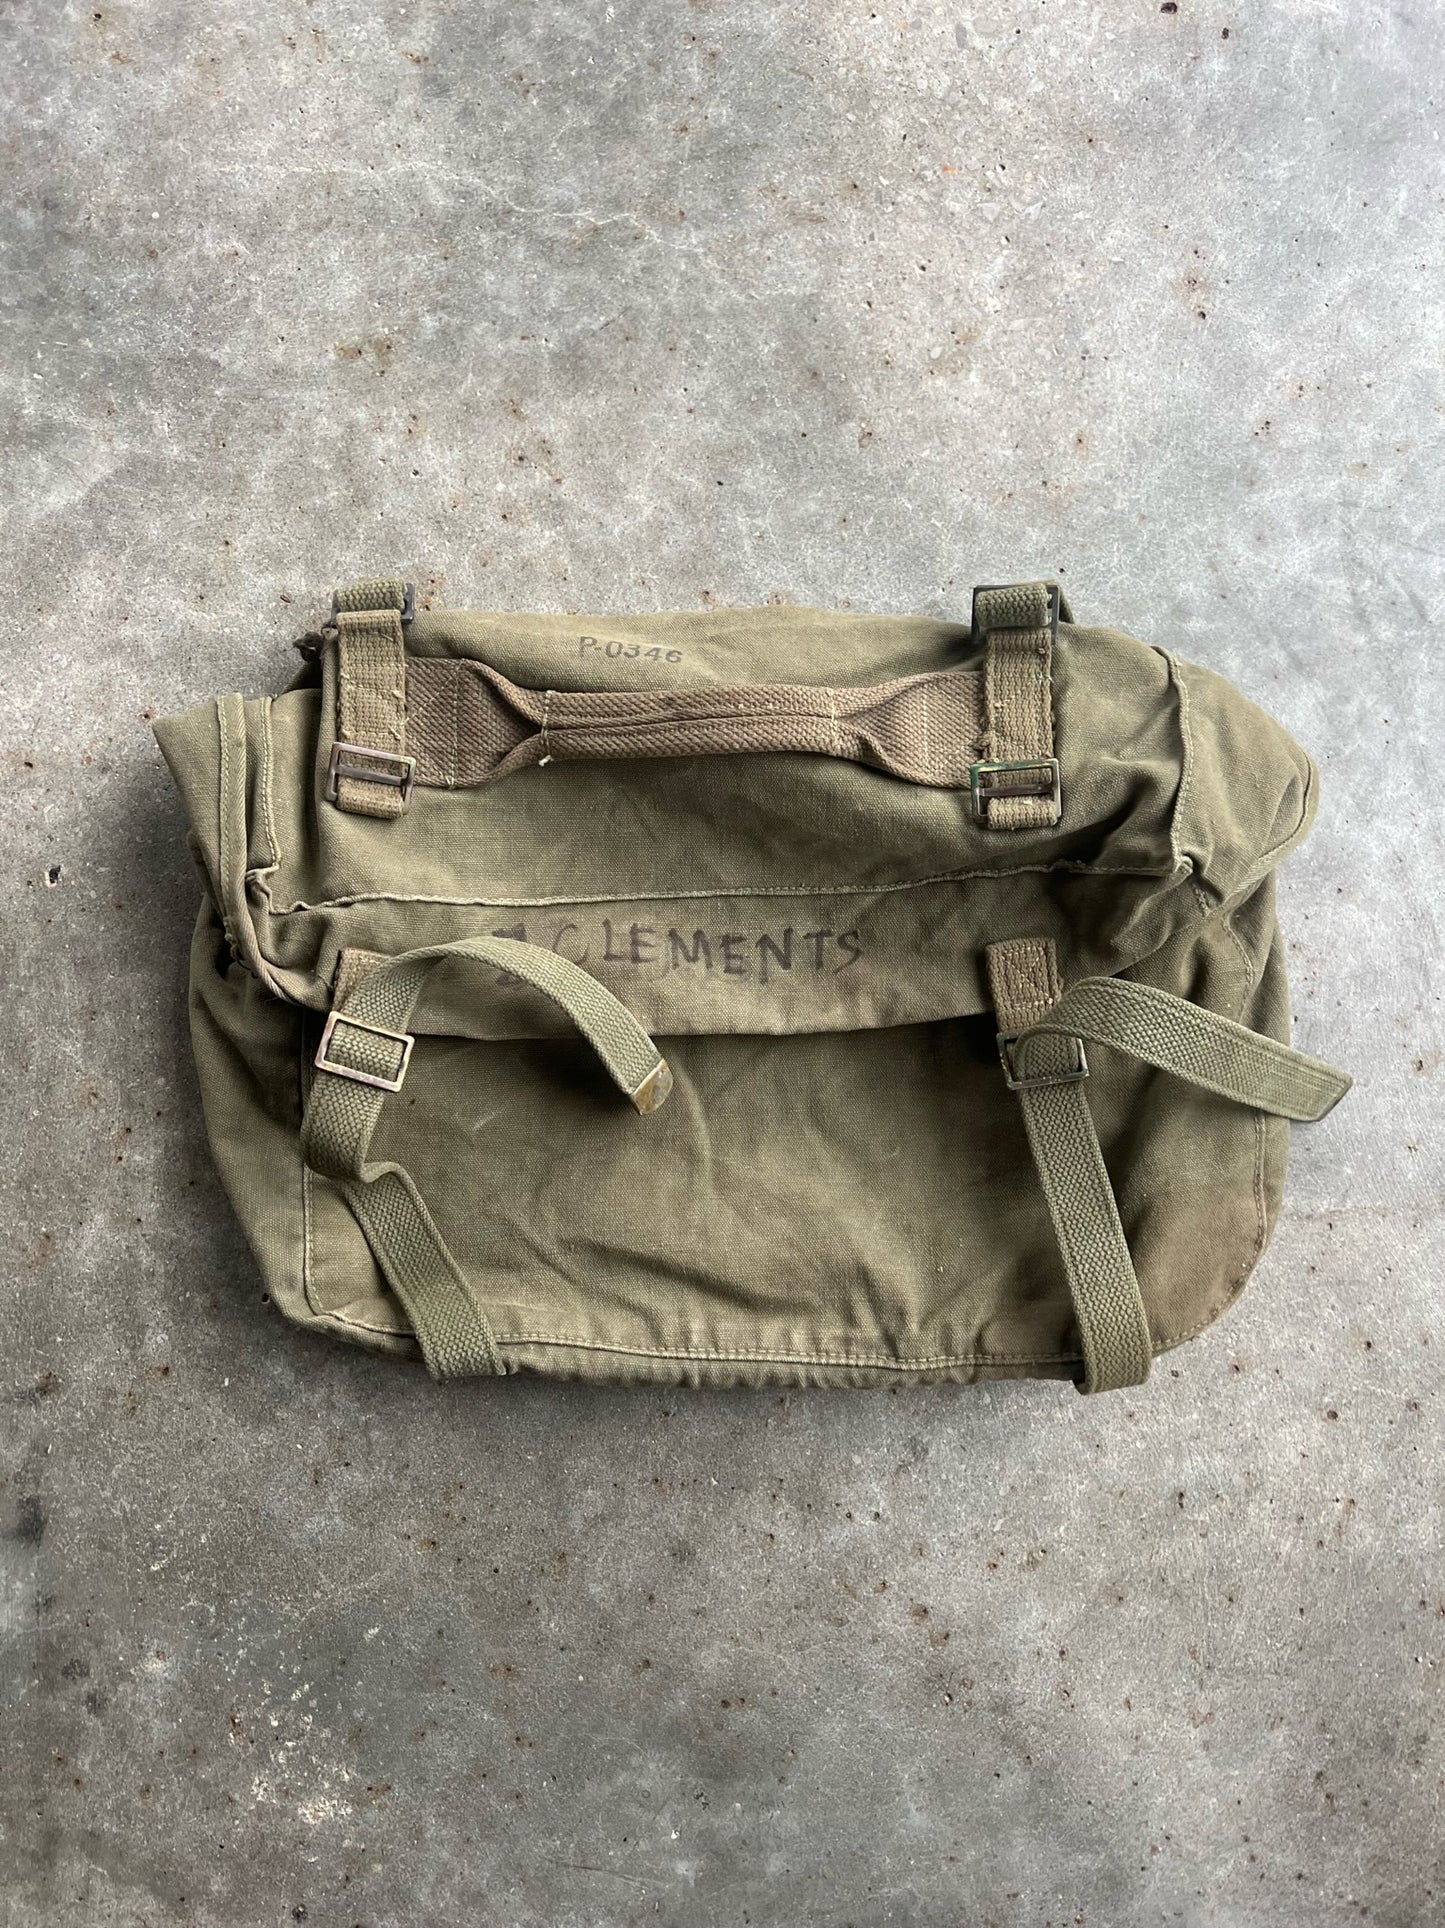 Vintage Army Bag